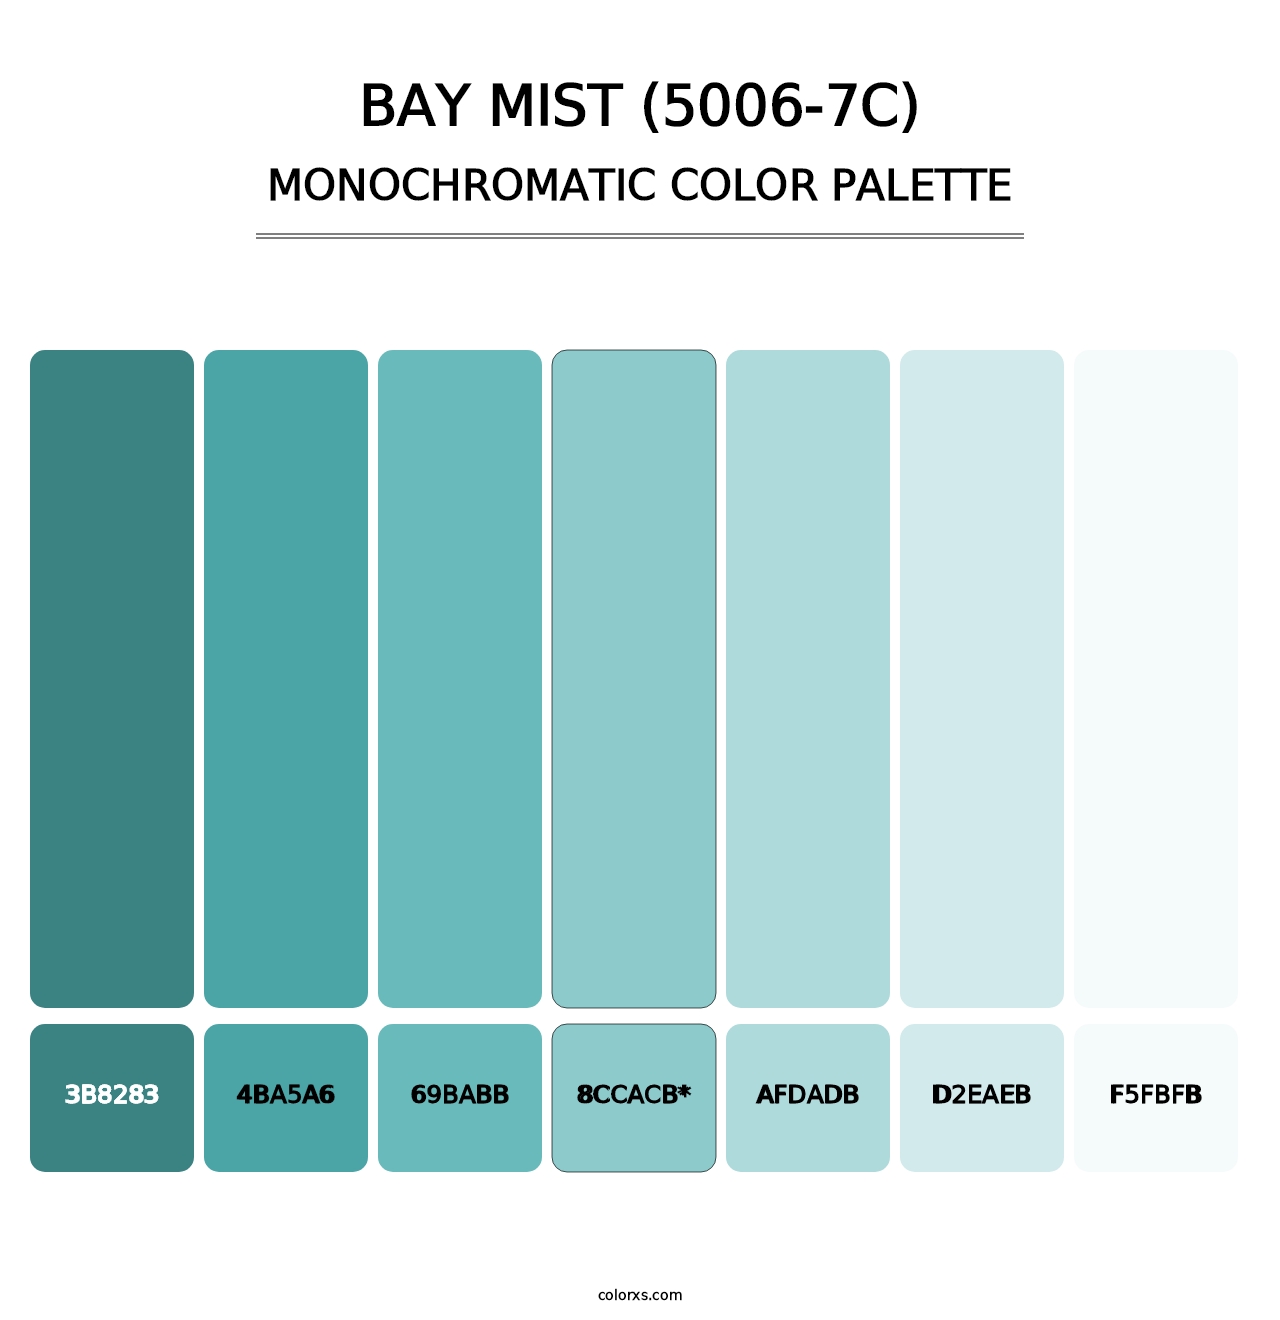 Bay Mist (5006-7C) - Monochromatic Color Palette